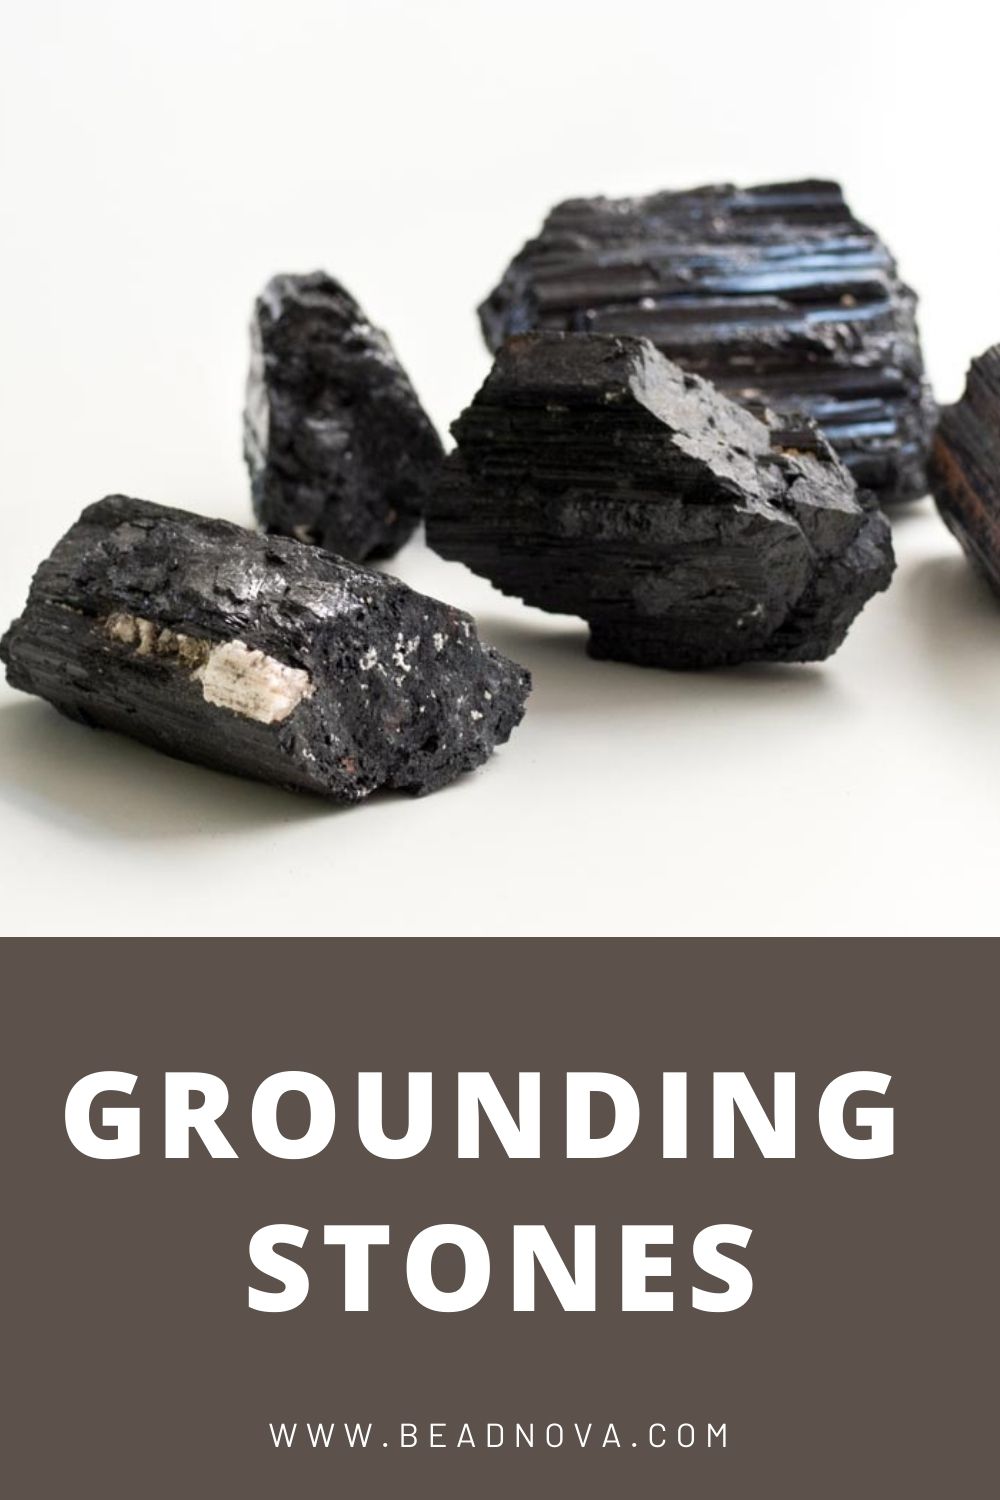 Grounding Stone &nocache=1